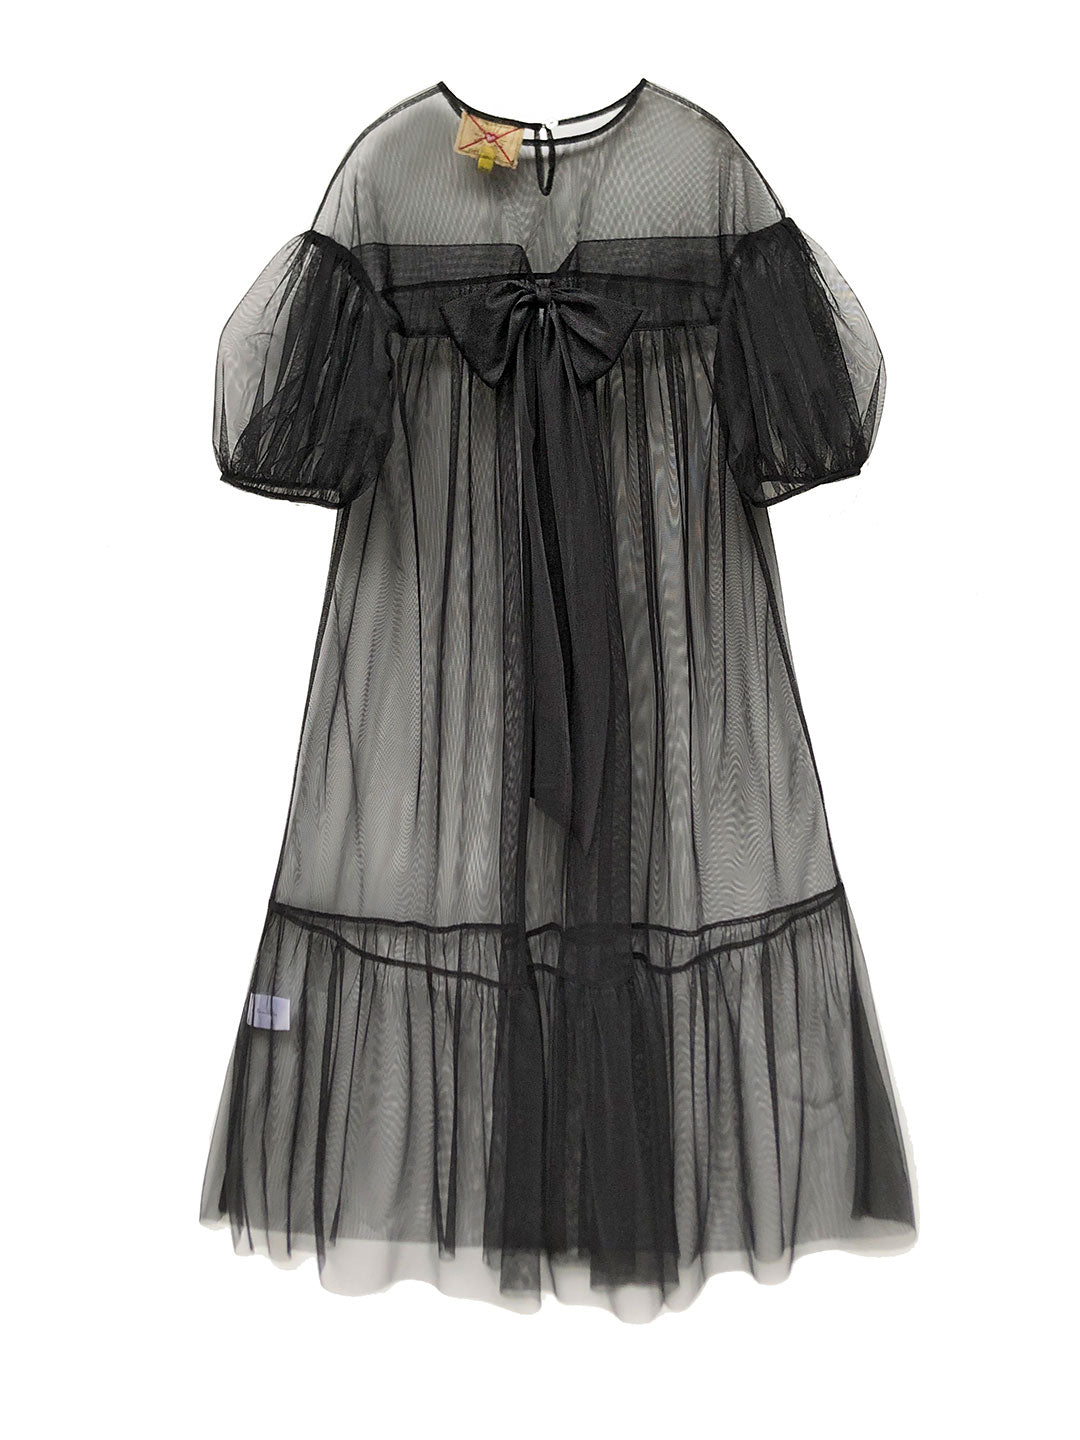 Victorian Style Black Mesh Dress | UNLOGICAL POEM – Unlogical Poem